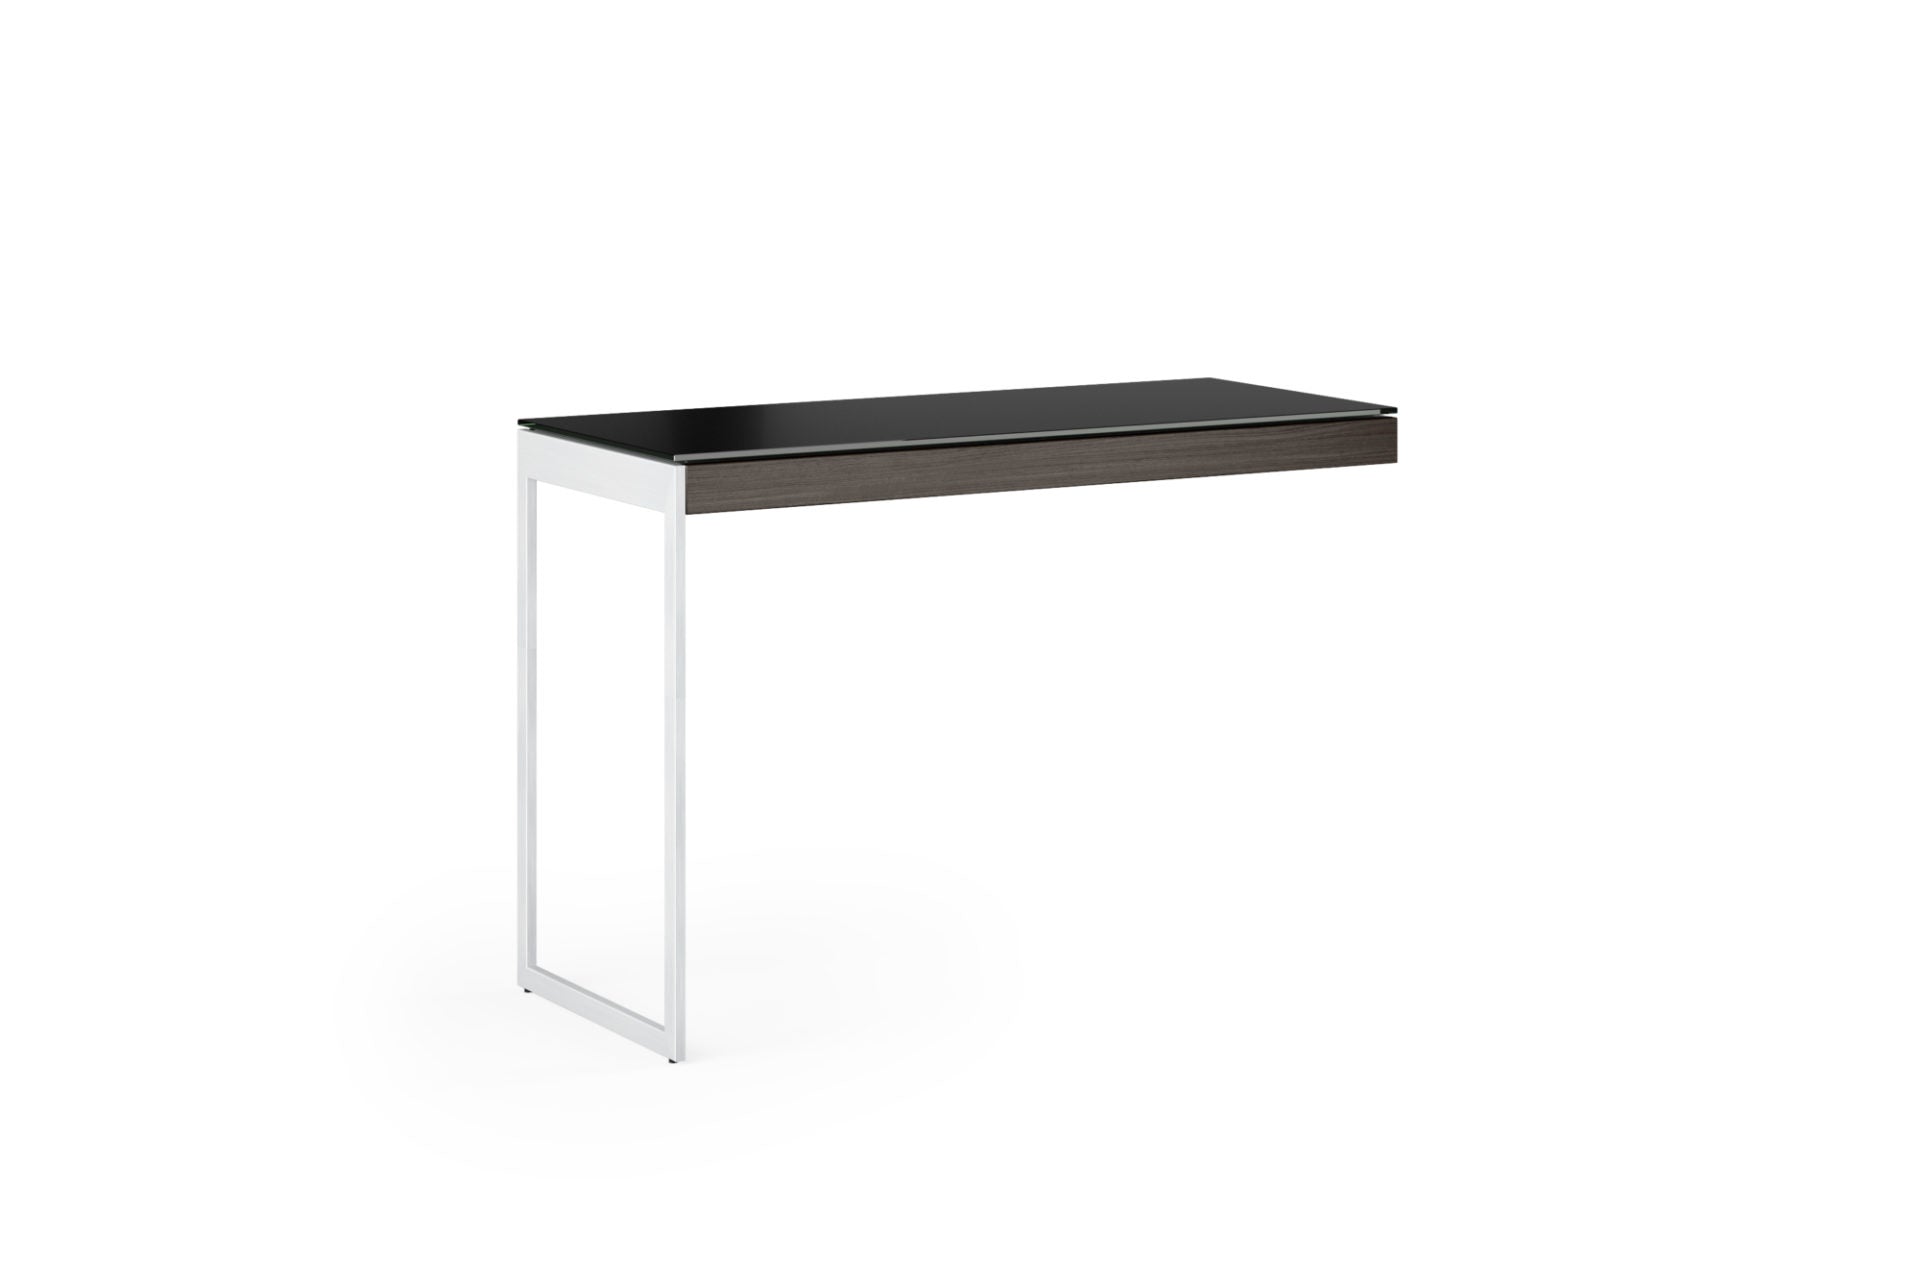 Sequel 6112 Modern Office Desk Return | BDI Furniture